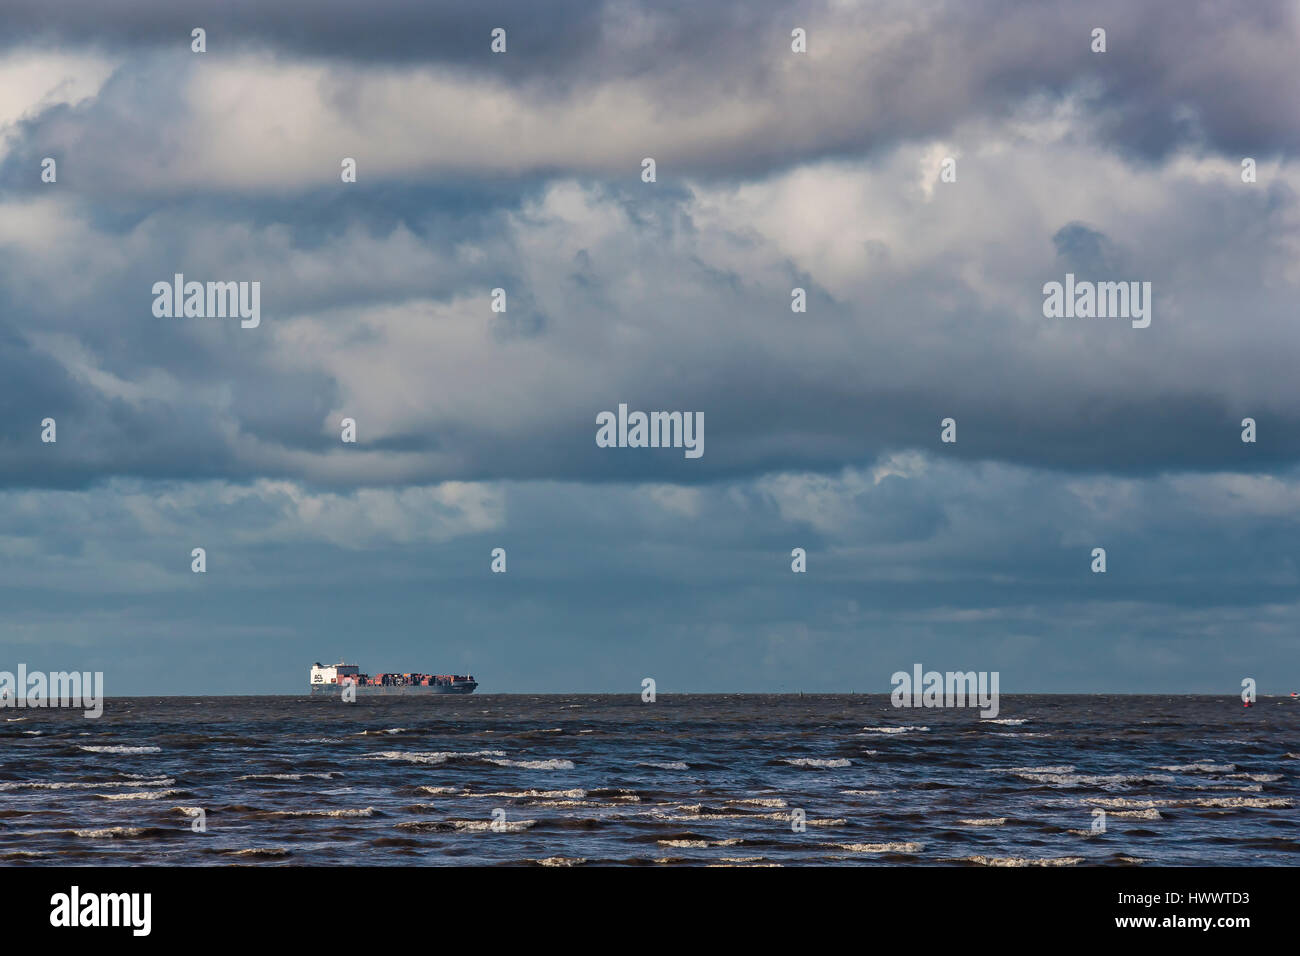 Atlantic Conveyor at sea. Crago container ship. Stock Photo